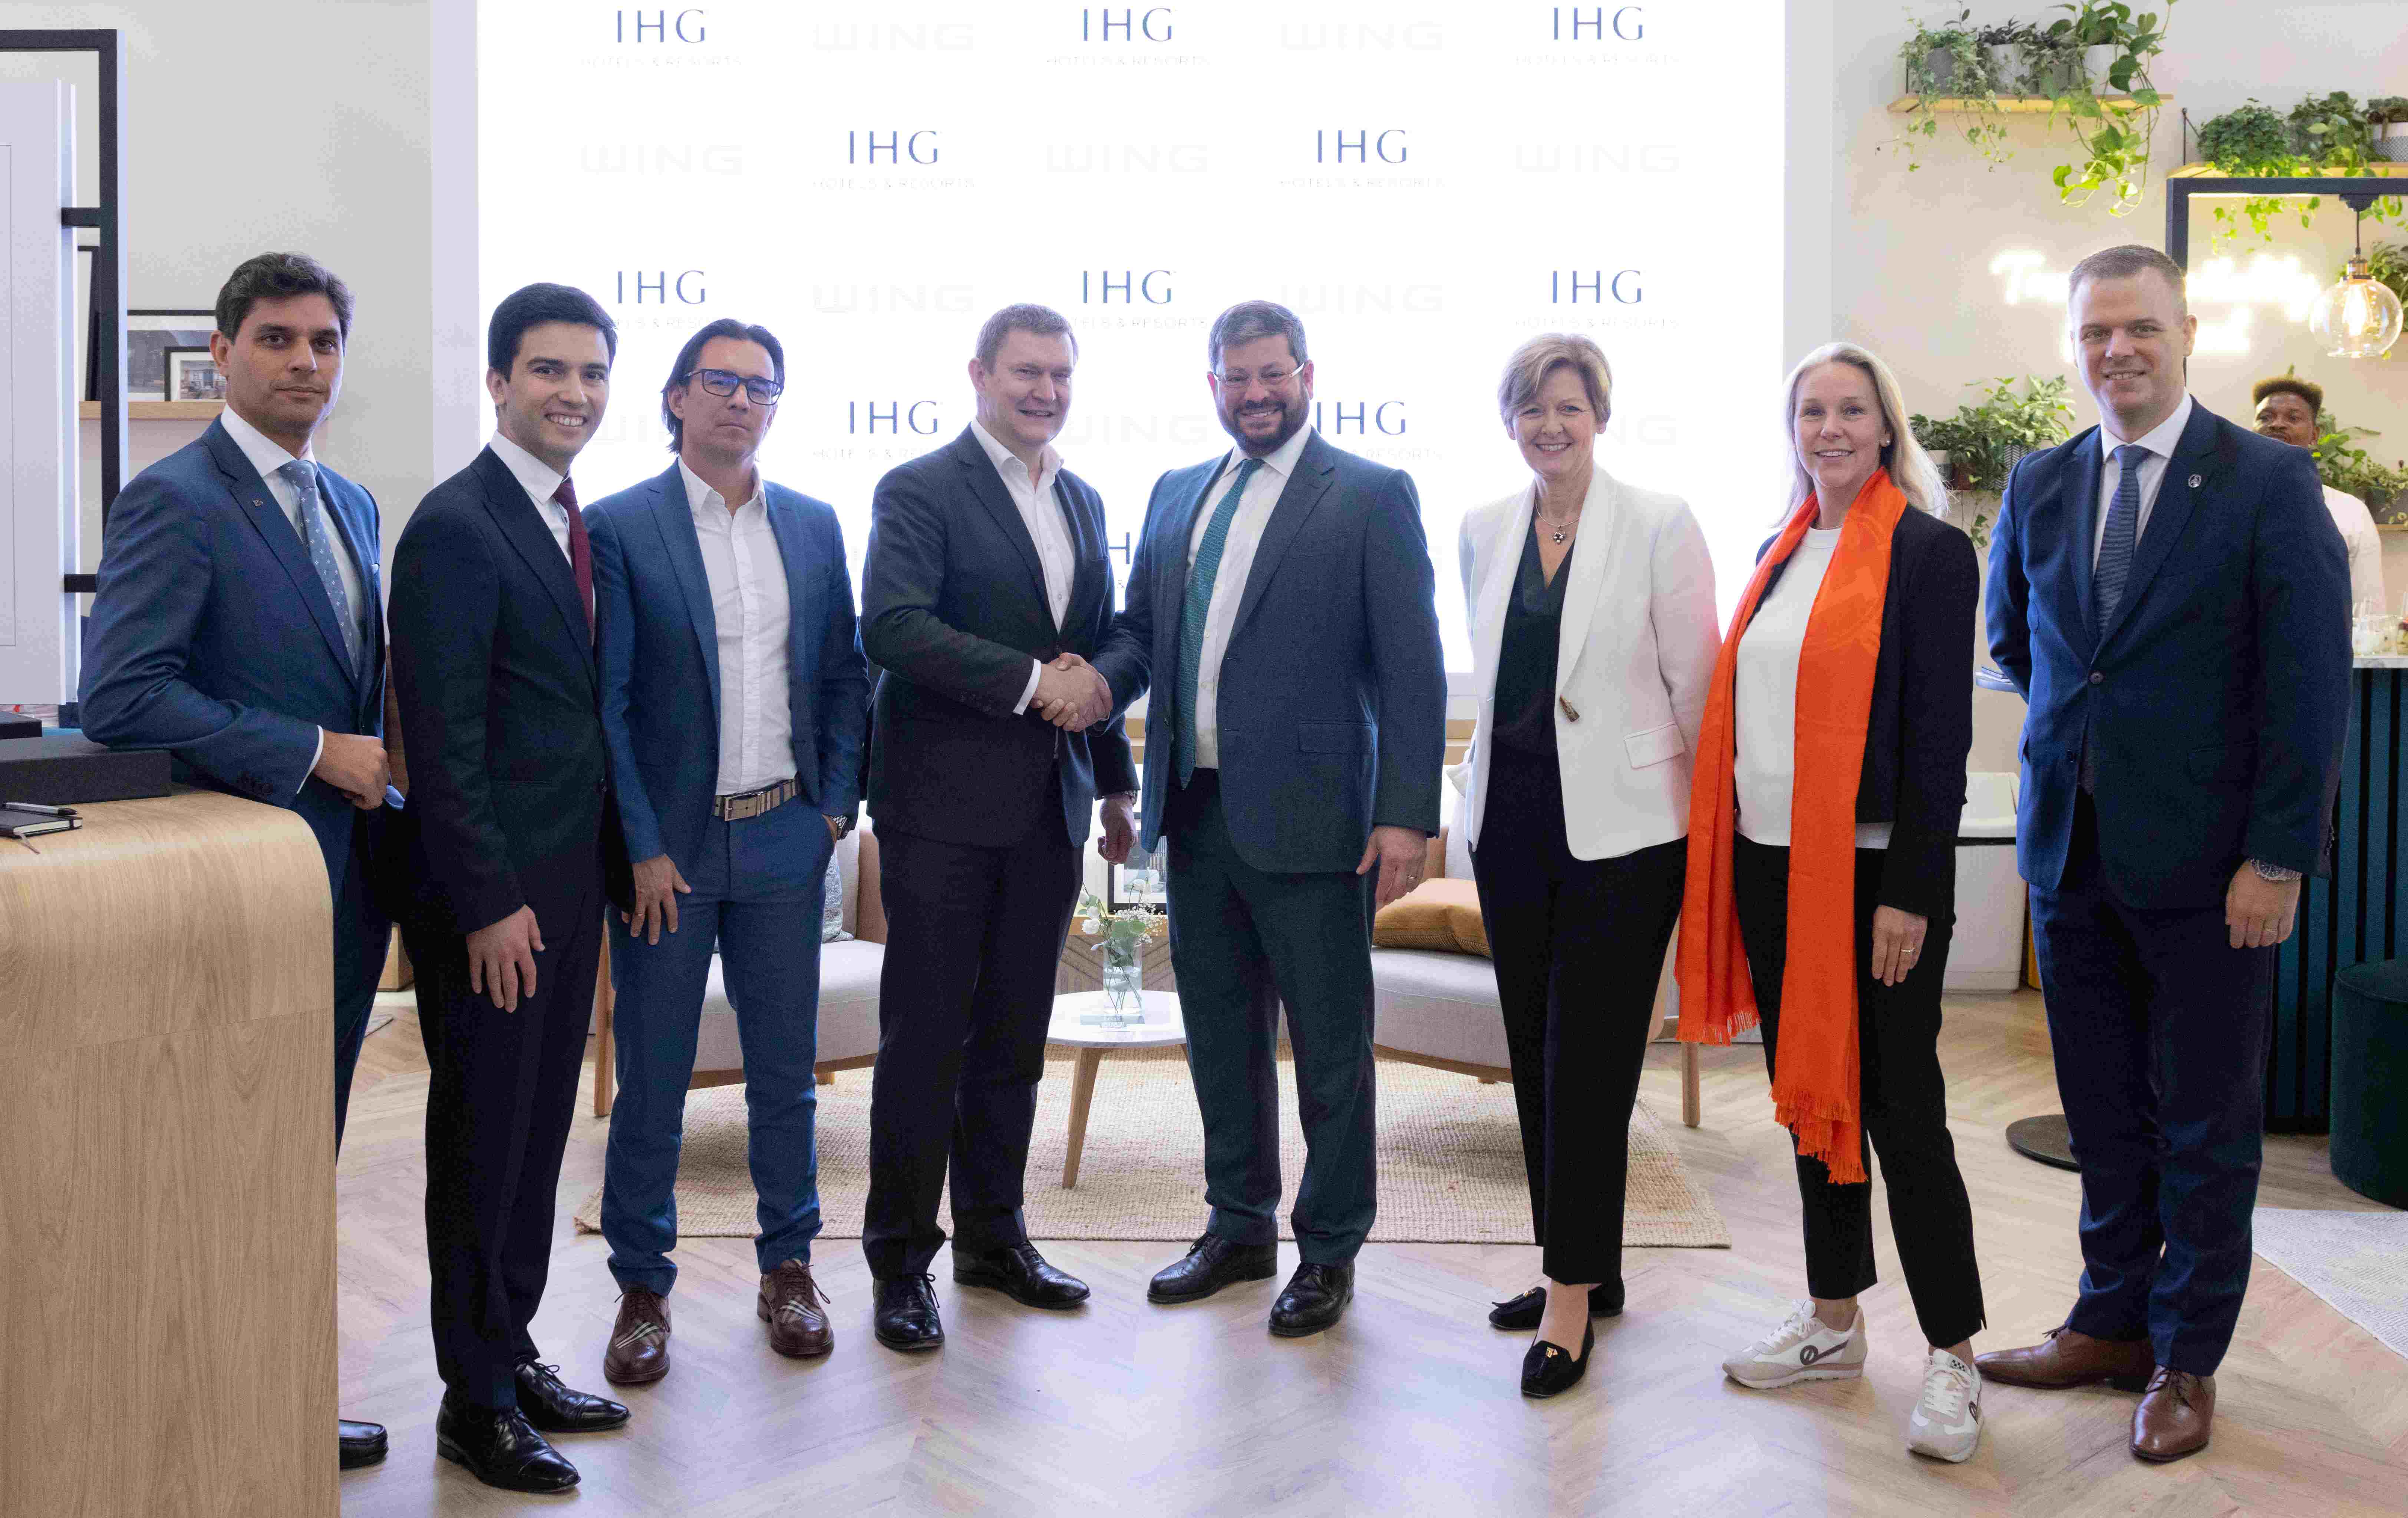 Az IHG Hotels & Resorts és a WING az EXPO Real 2023 kiállításon írt alá megállapodást a Hotel Indigo és a Holiday Inn Express szállodamárkák Budapestre érkezéséről